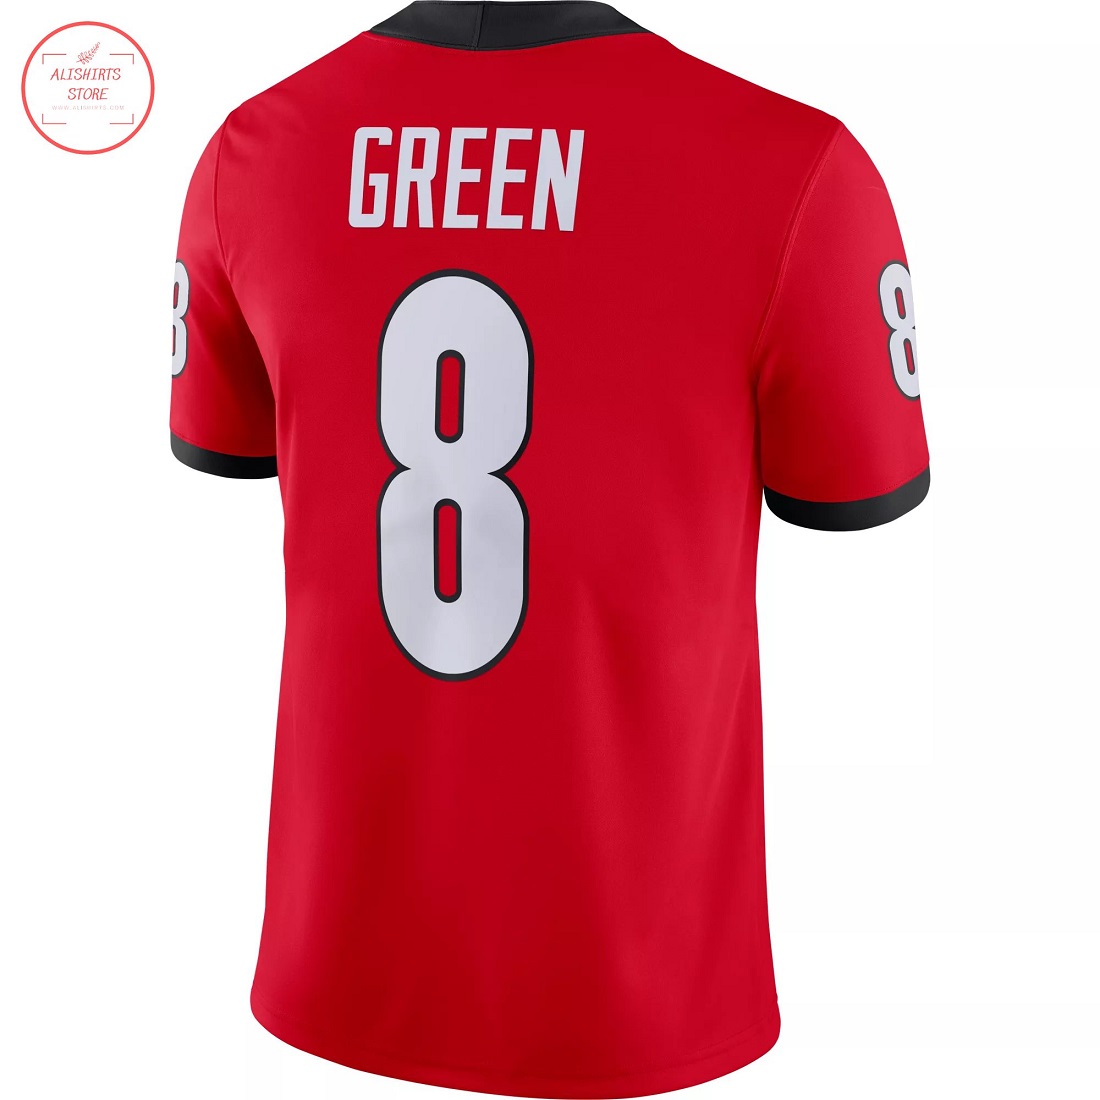 Georgia Bulldogs Green 8 Red Football Jersey